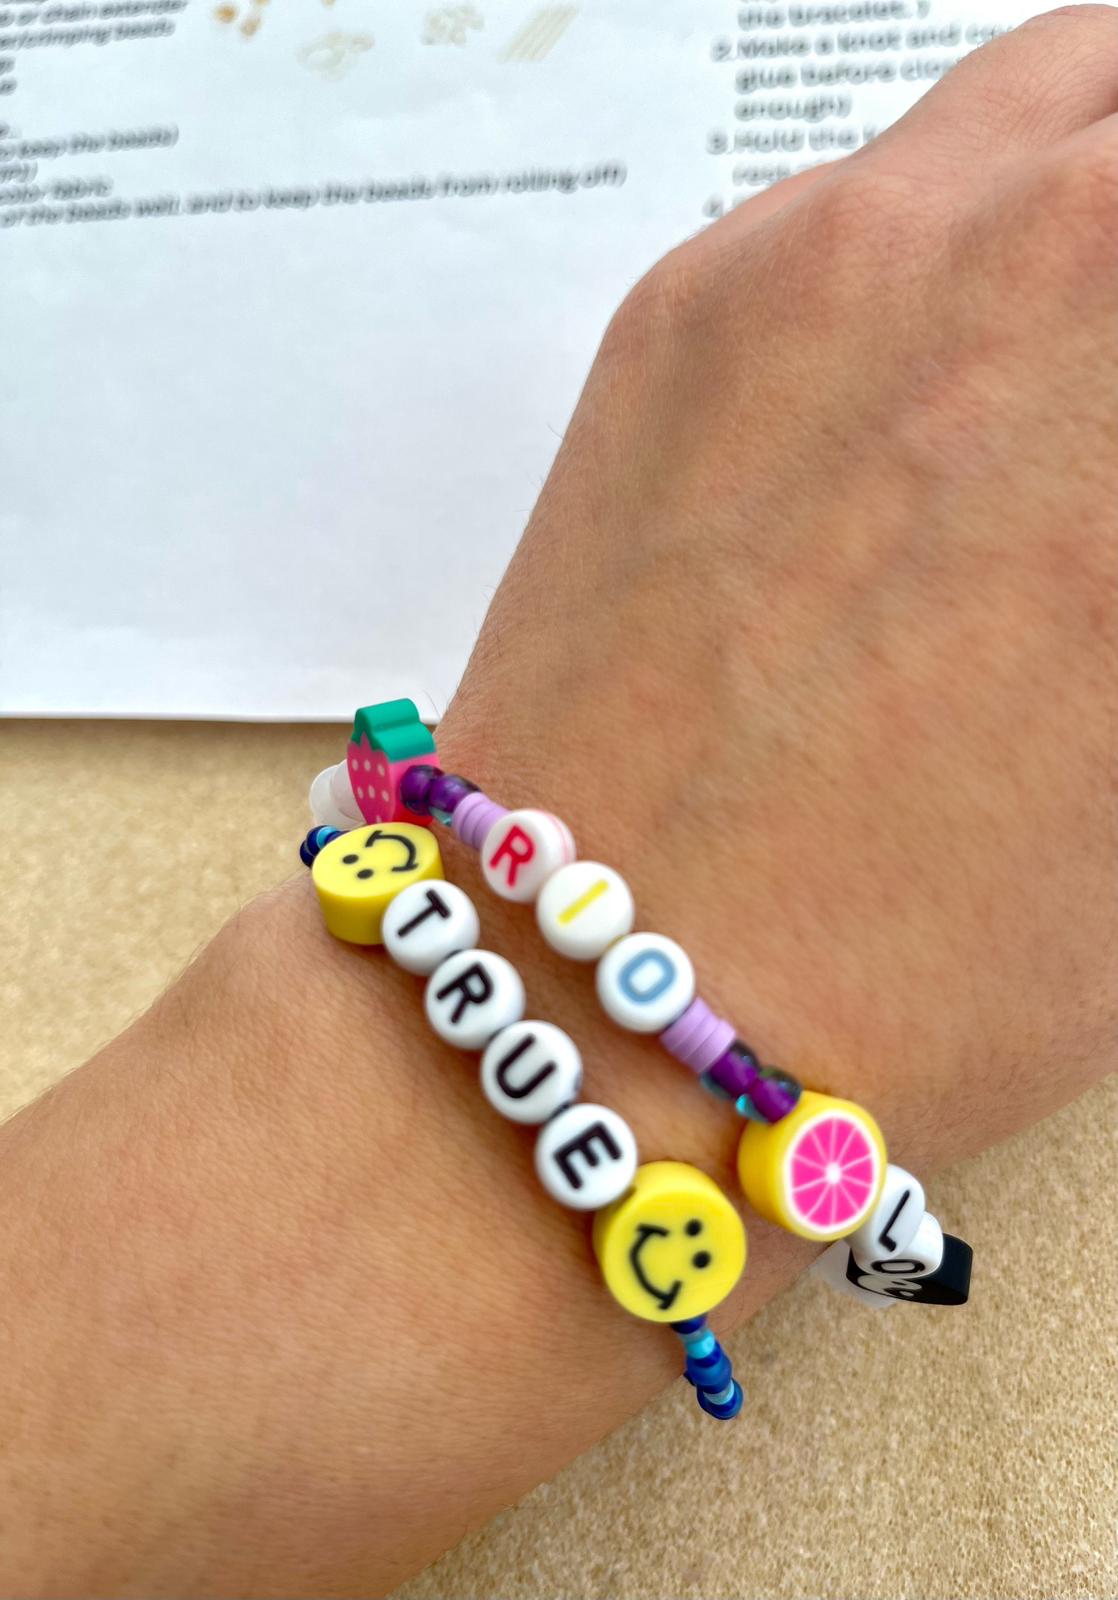 【WORKSHOP】 Make your own bracelet